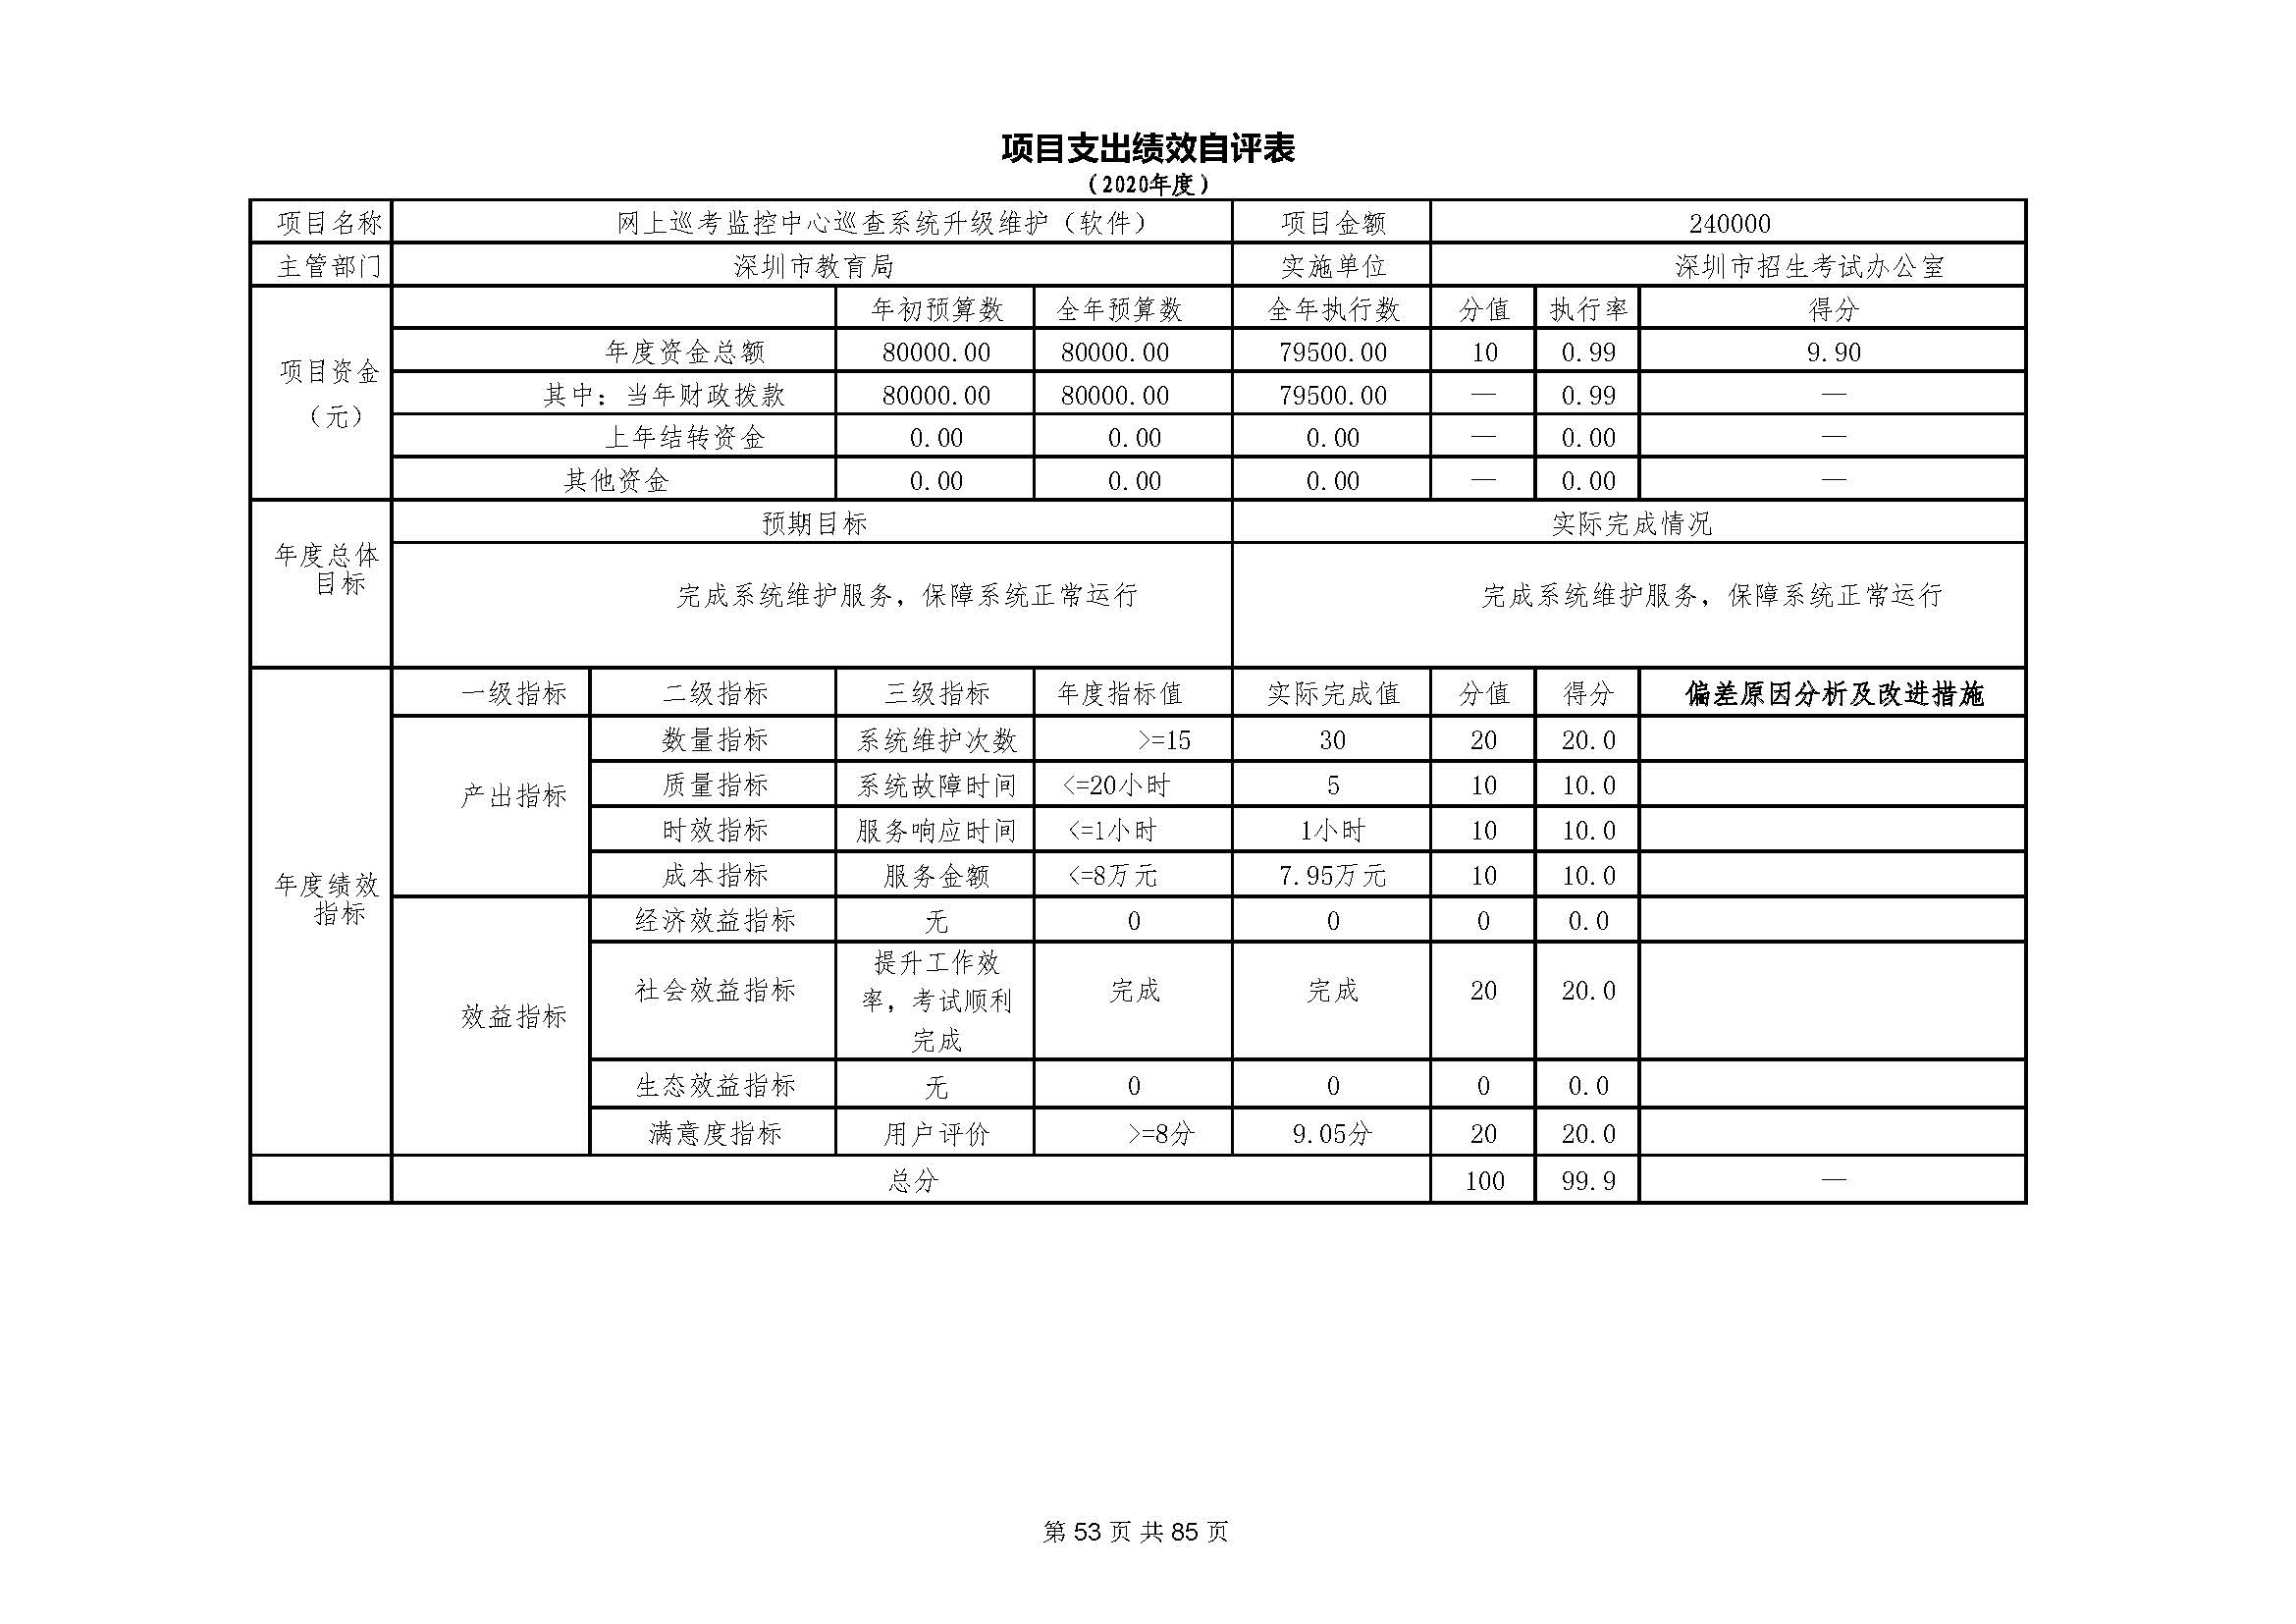 深圳市招生考试办公室2020年度部门决算_页面_54.jpg